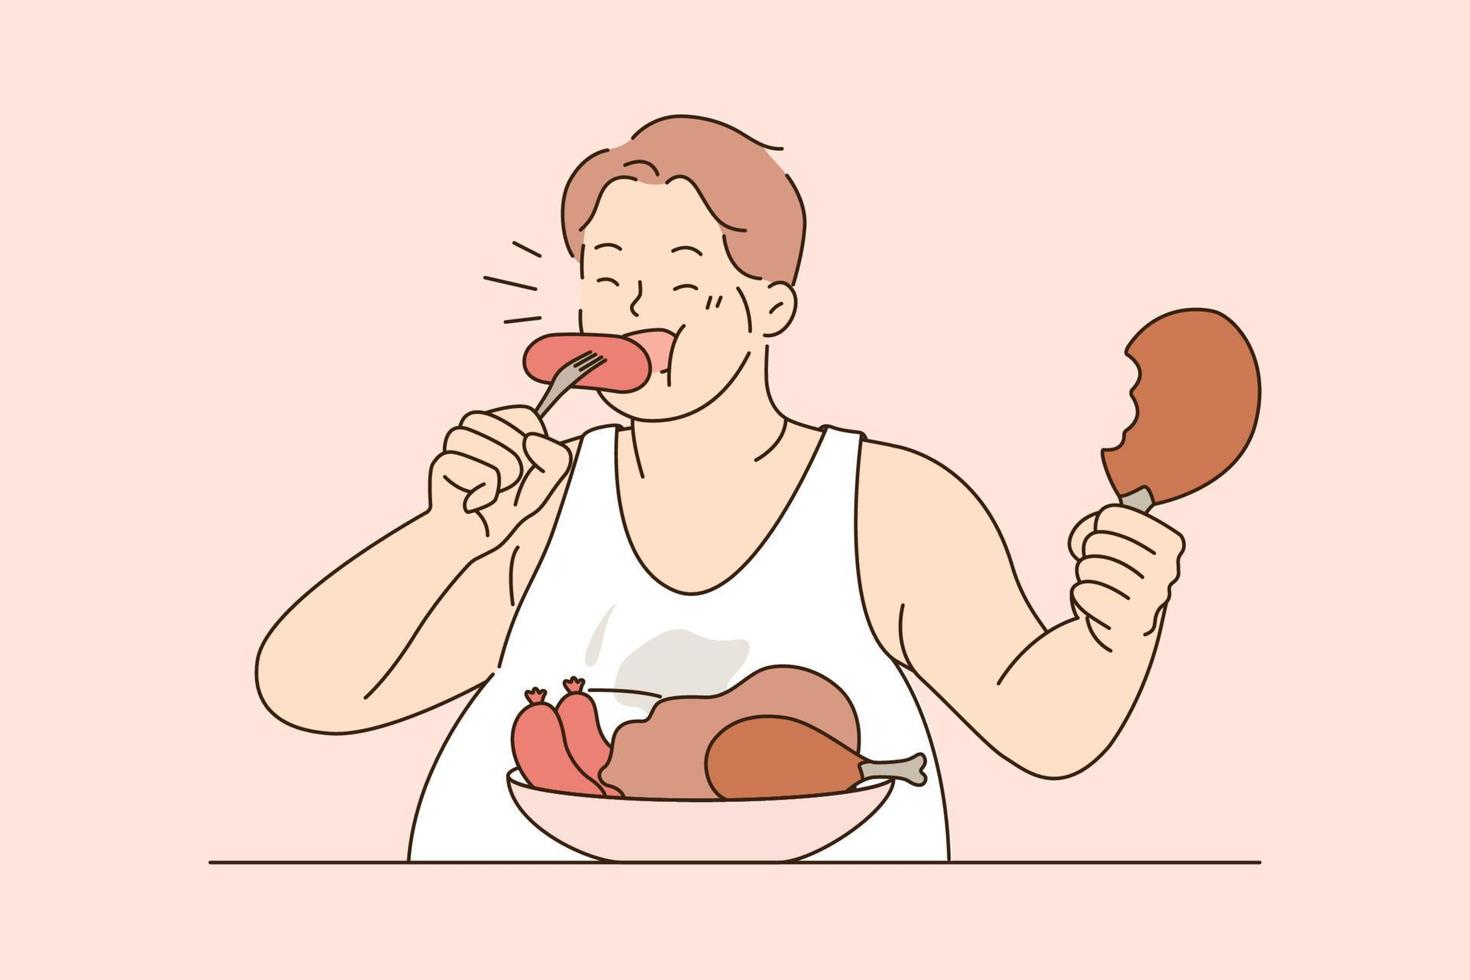 sobre comer e conceito de dieta insalubre. homem gordo sentado comendo carne de salsichas com apetite comendo demais vivendo estilo de vida insalubre ilustração vetorial vetor